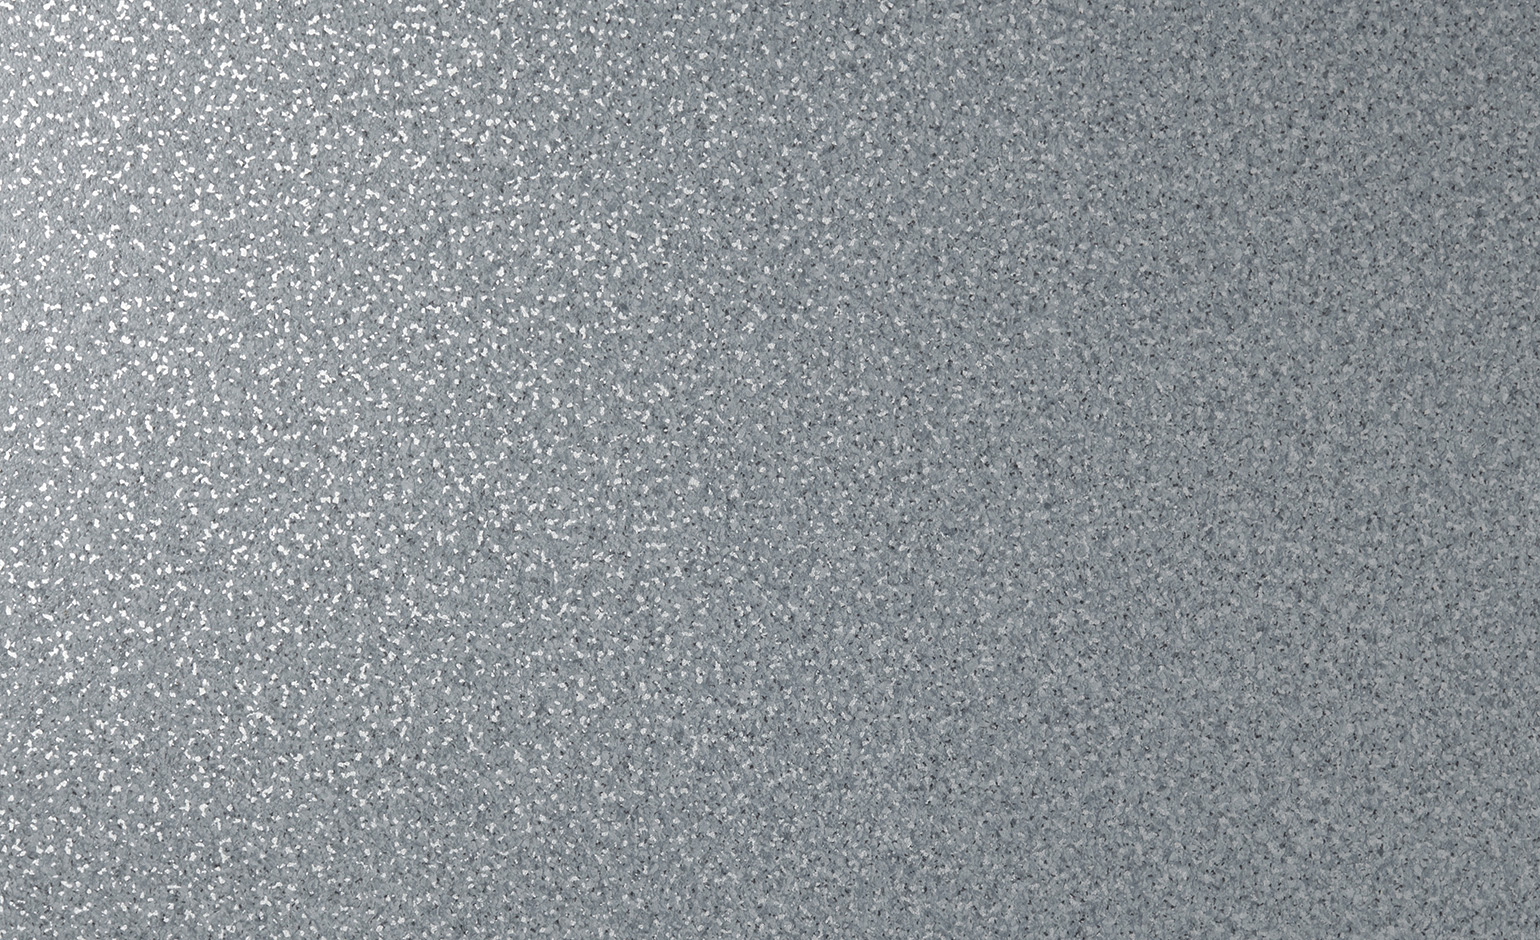 Sol vinyle rouleau PROJECT Tarkett, Motif motif moucheté bleu gris, rouleau 4.00 m